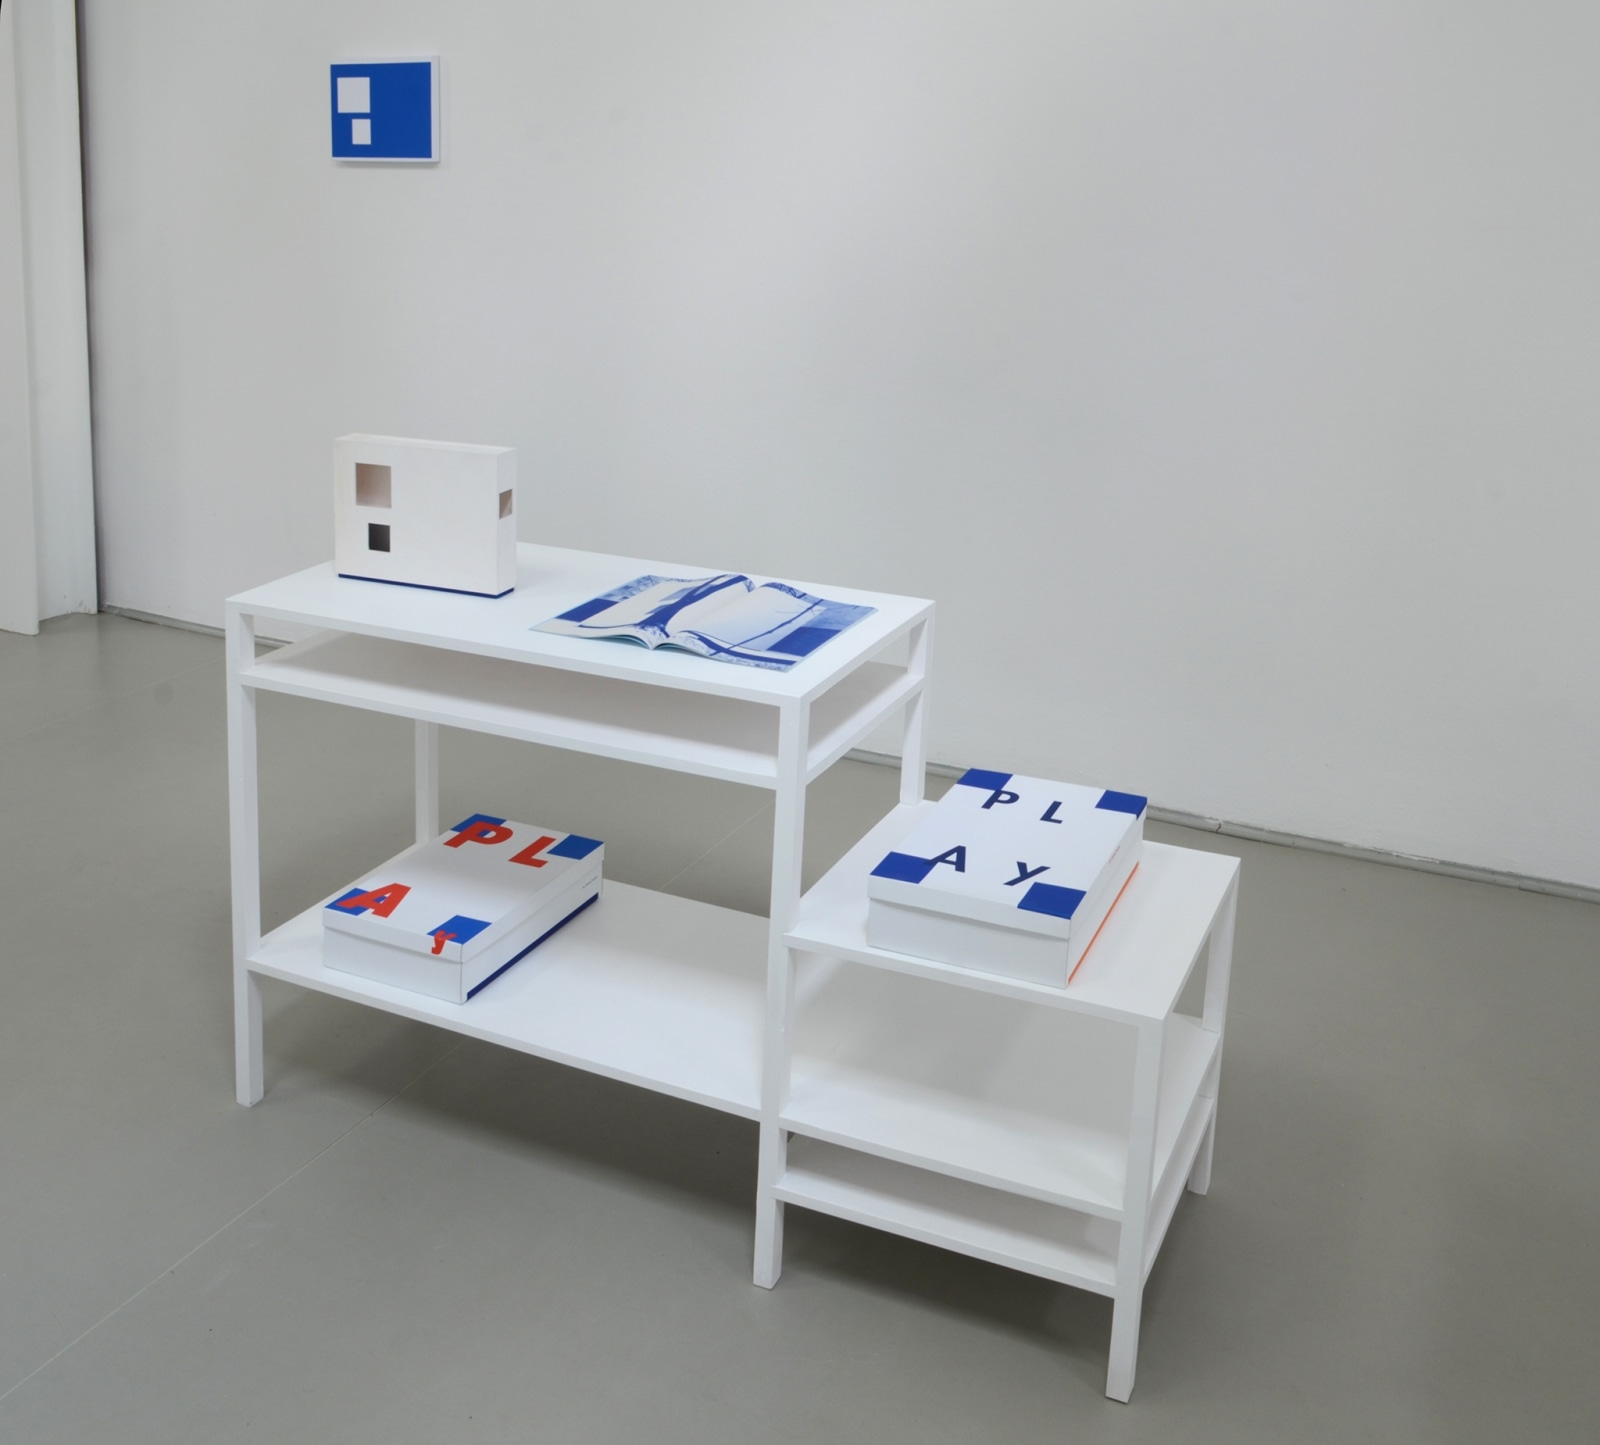 <div class="image_caption_container"><div class="image_caption"><p>Exhibition View, </p><p>Jean-Pascal Flavien at the Kunstverein Langenhagen, 2012</p><p>©</p></div></div>